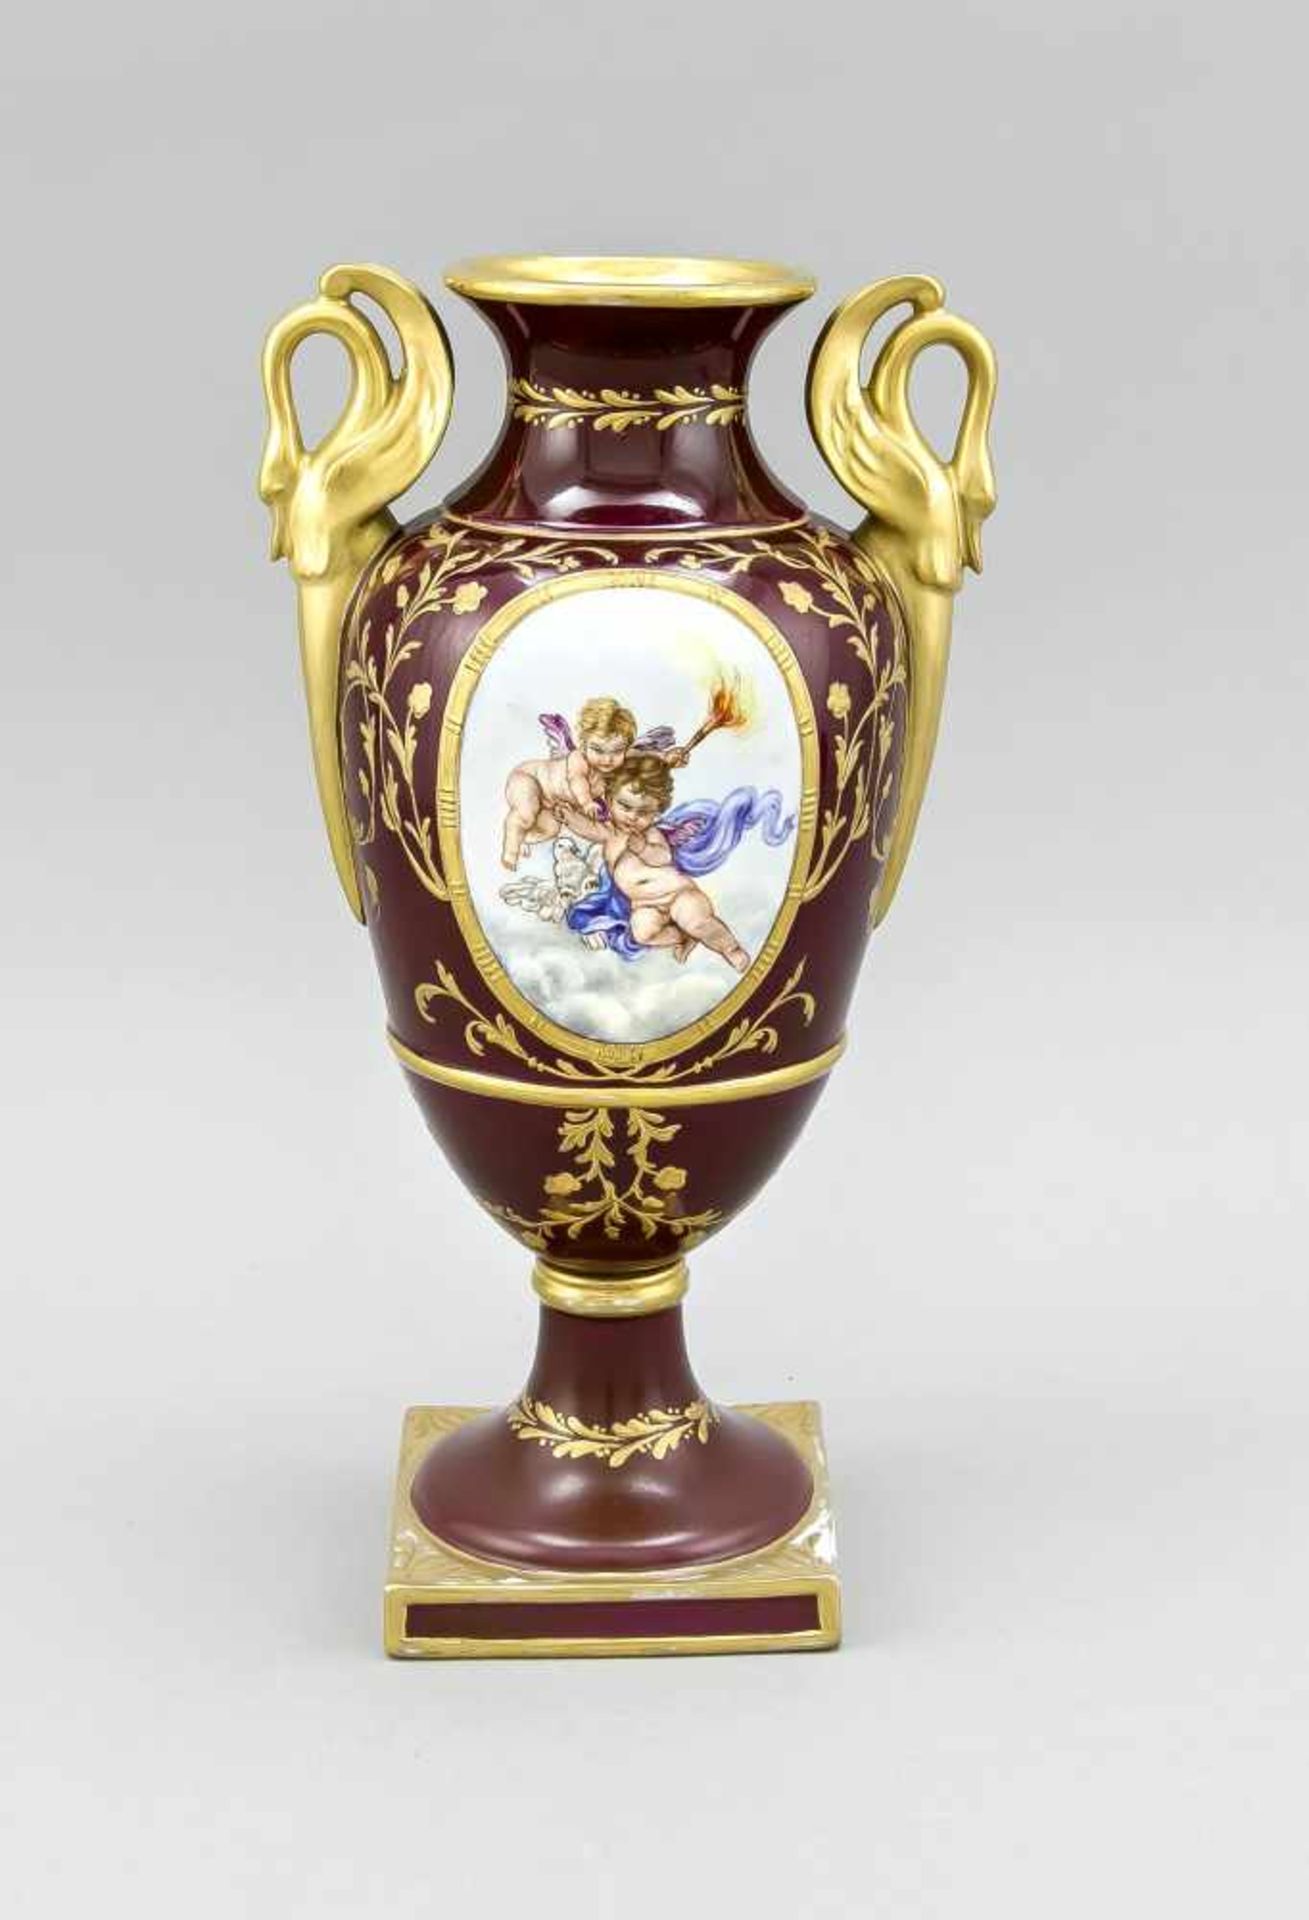 Empire-Vase in Sèvres-Manier, w. Italien, 19. Jh., Amphorenform mit hochgezogenenSchwanenhenkeln,